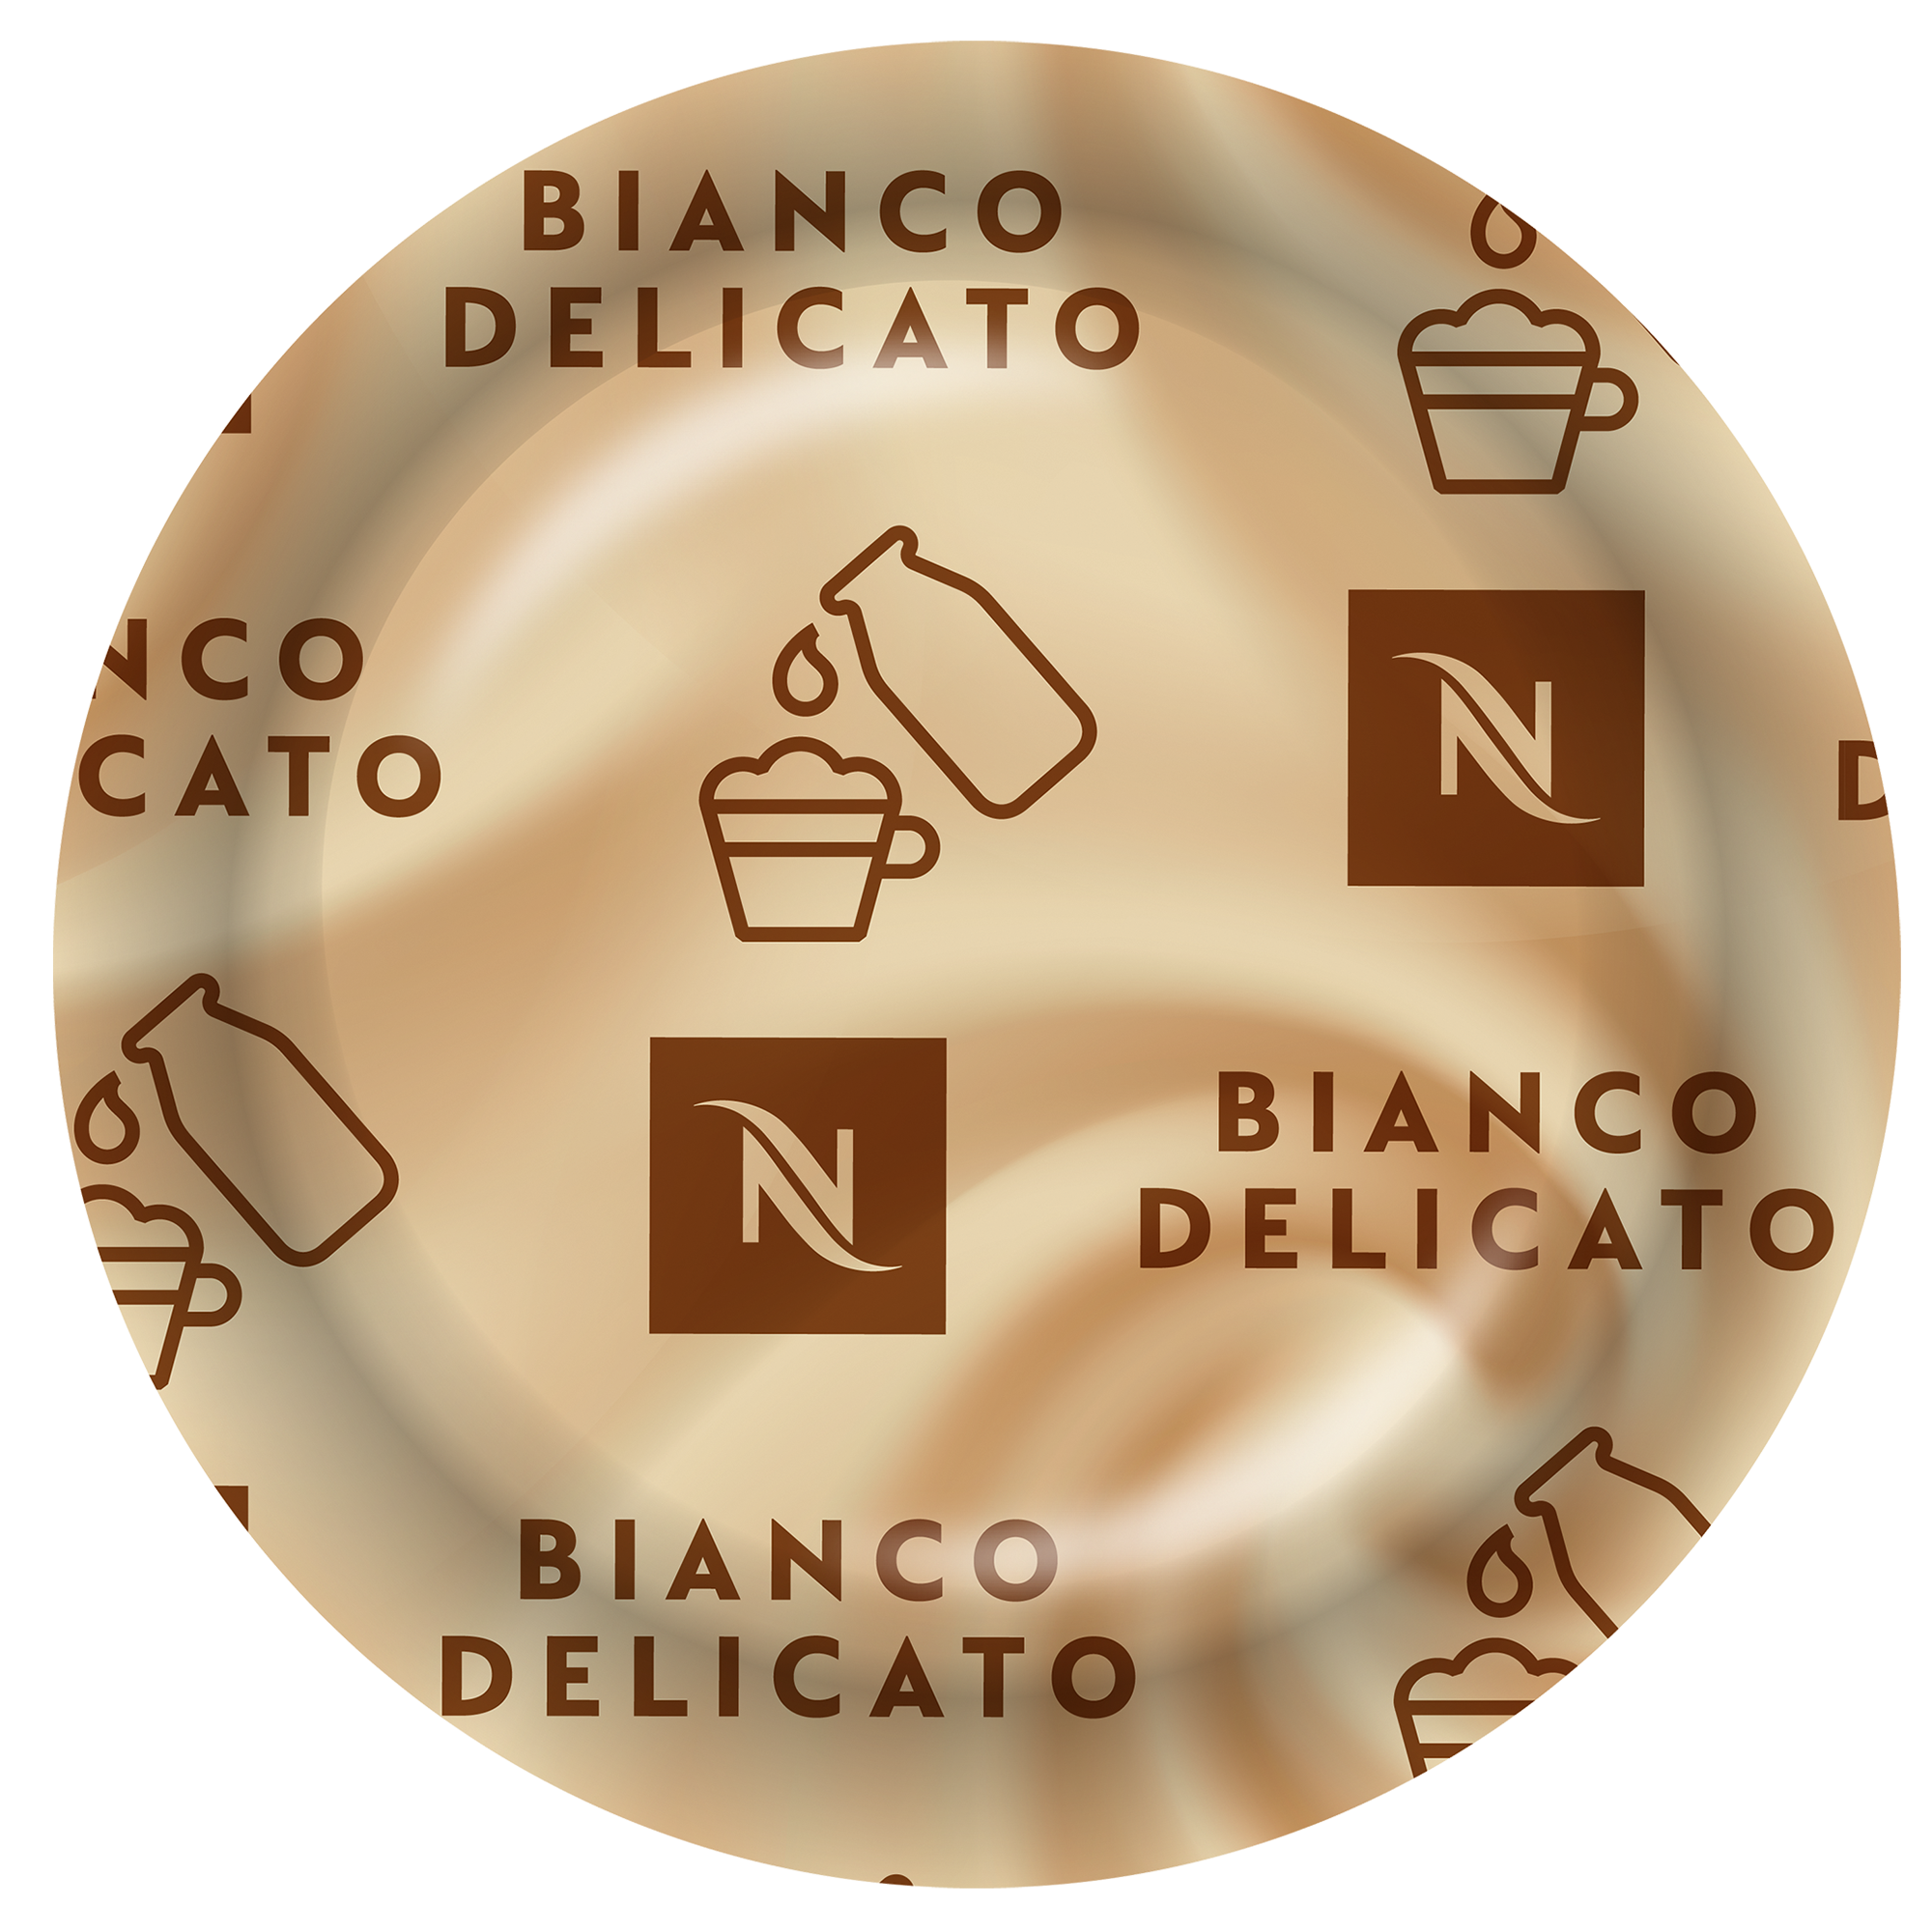 Bianco Delicato Coffee Capsule Box